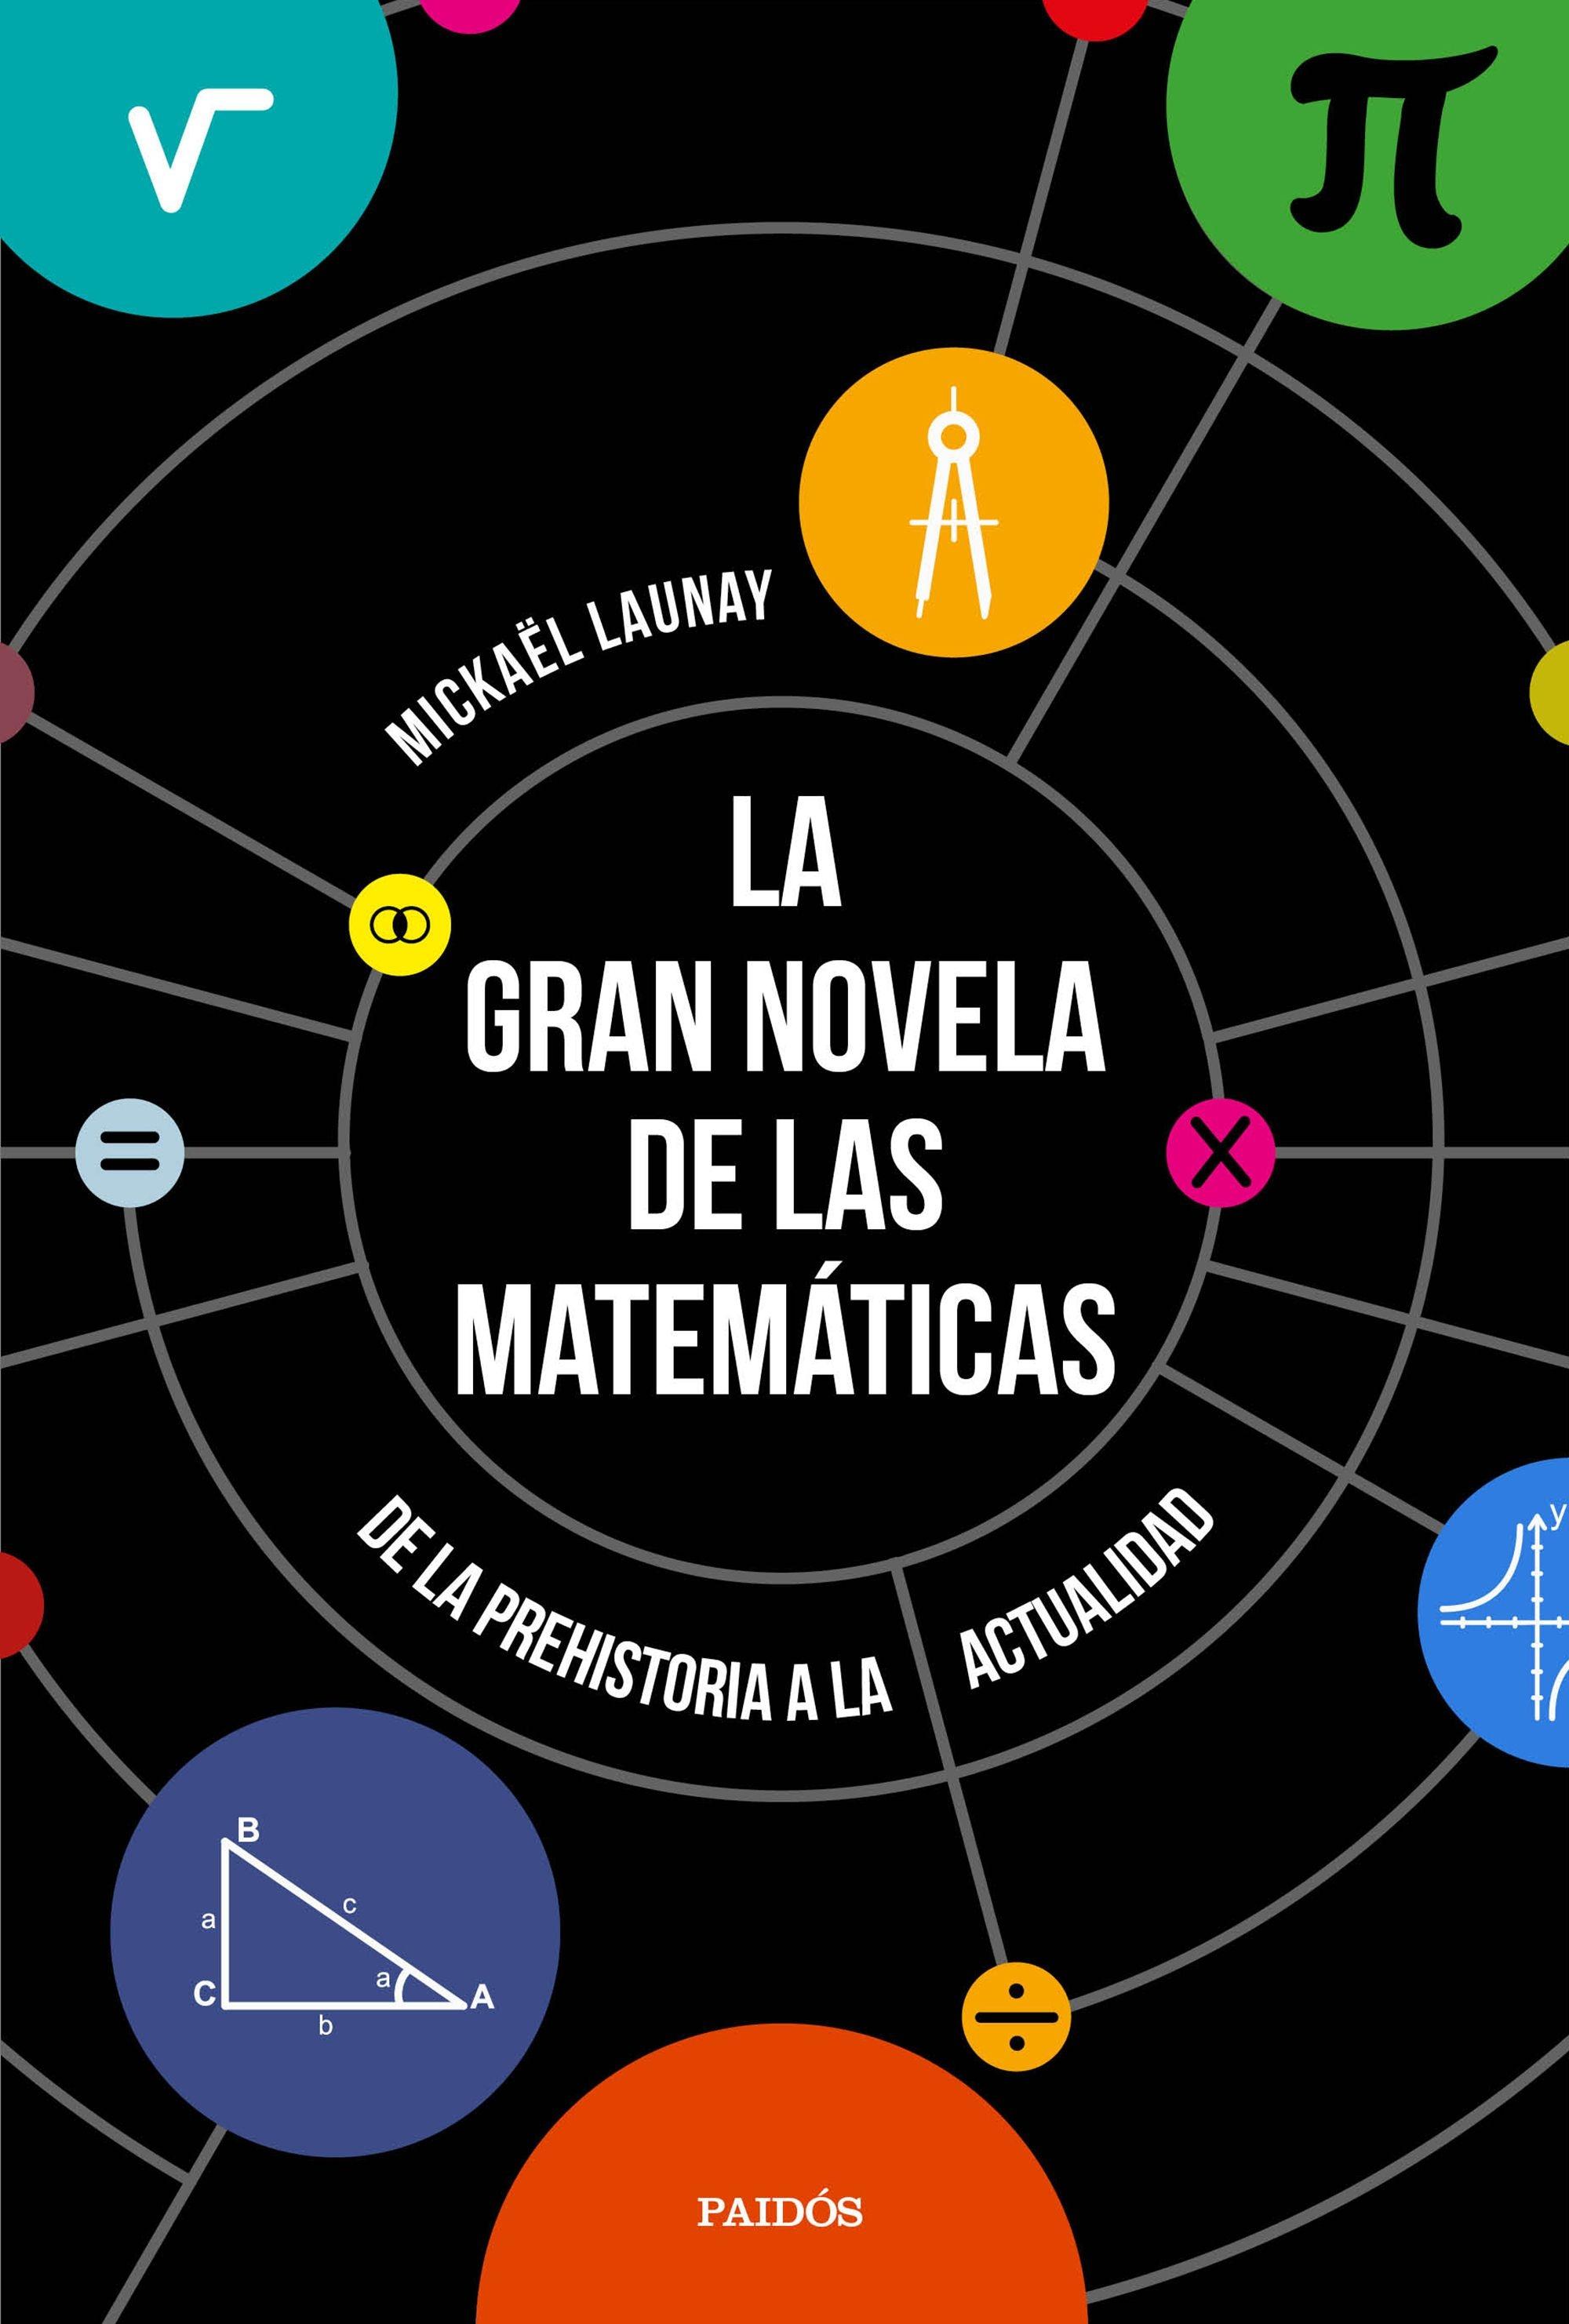 La Gran Novela de las Matemáticas "De la Prehistoria a la Actualidad". 